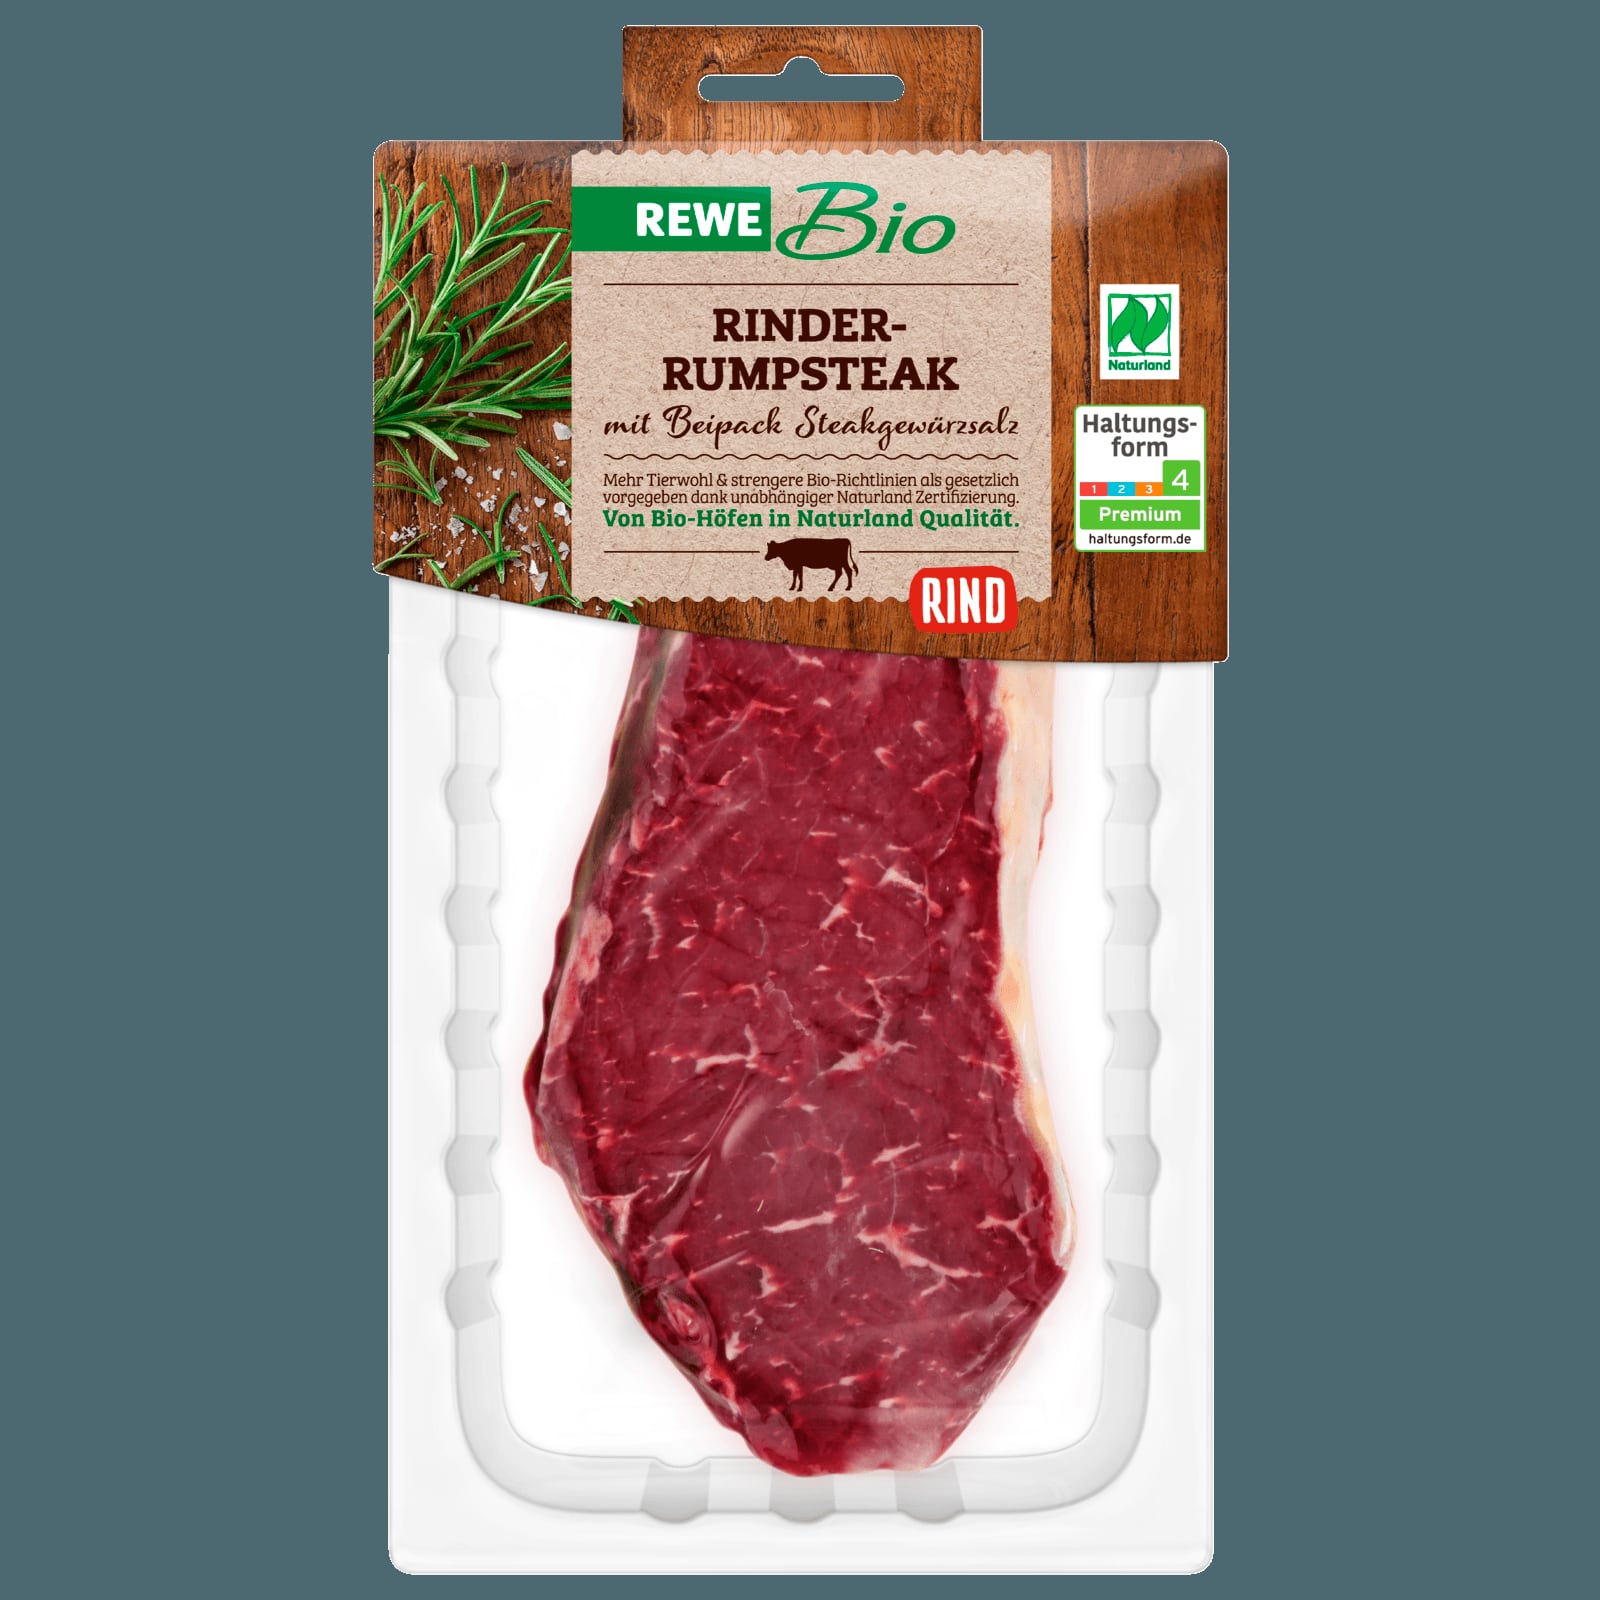 Rewe Bio Rinder Rumpsteak 200g Bei Rewe Online Bestellen